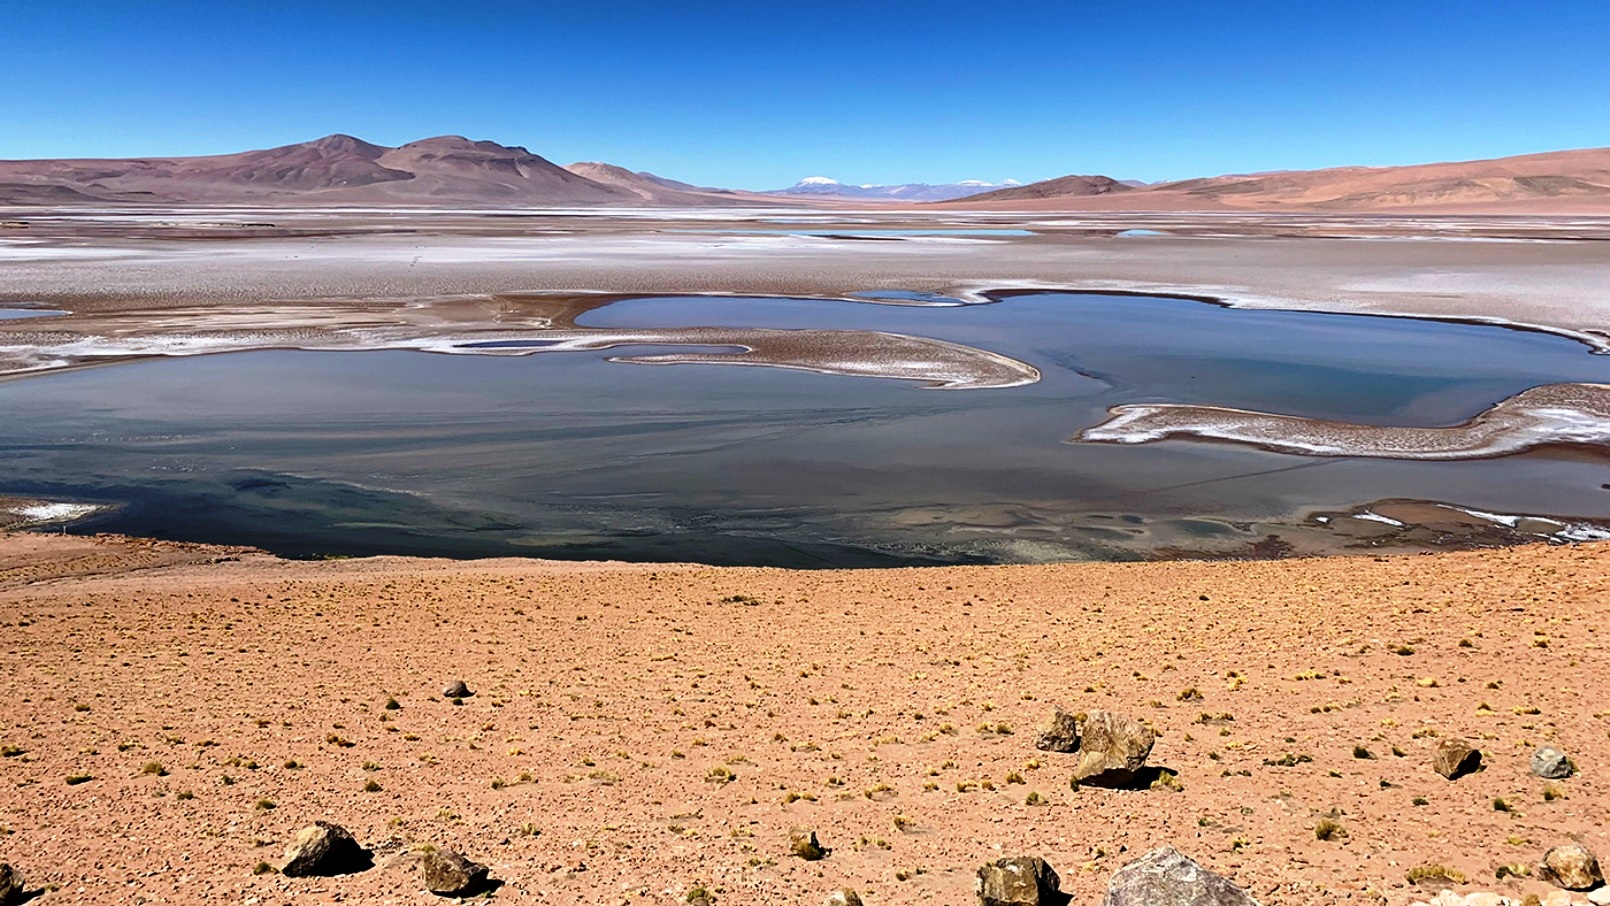 Rempli de lacs saumâtres, le plateau de Quisquiro dans l'Altiplano d'Amérique du Sud, au Chili,&nbsp;représente le type de paysage que les scientifiques pensent avoir existé il y a des milliards d'années sur Mars, dans le cratère Gale, que le rover Curiosity de la Nasa explore. © Maksym Bocharov